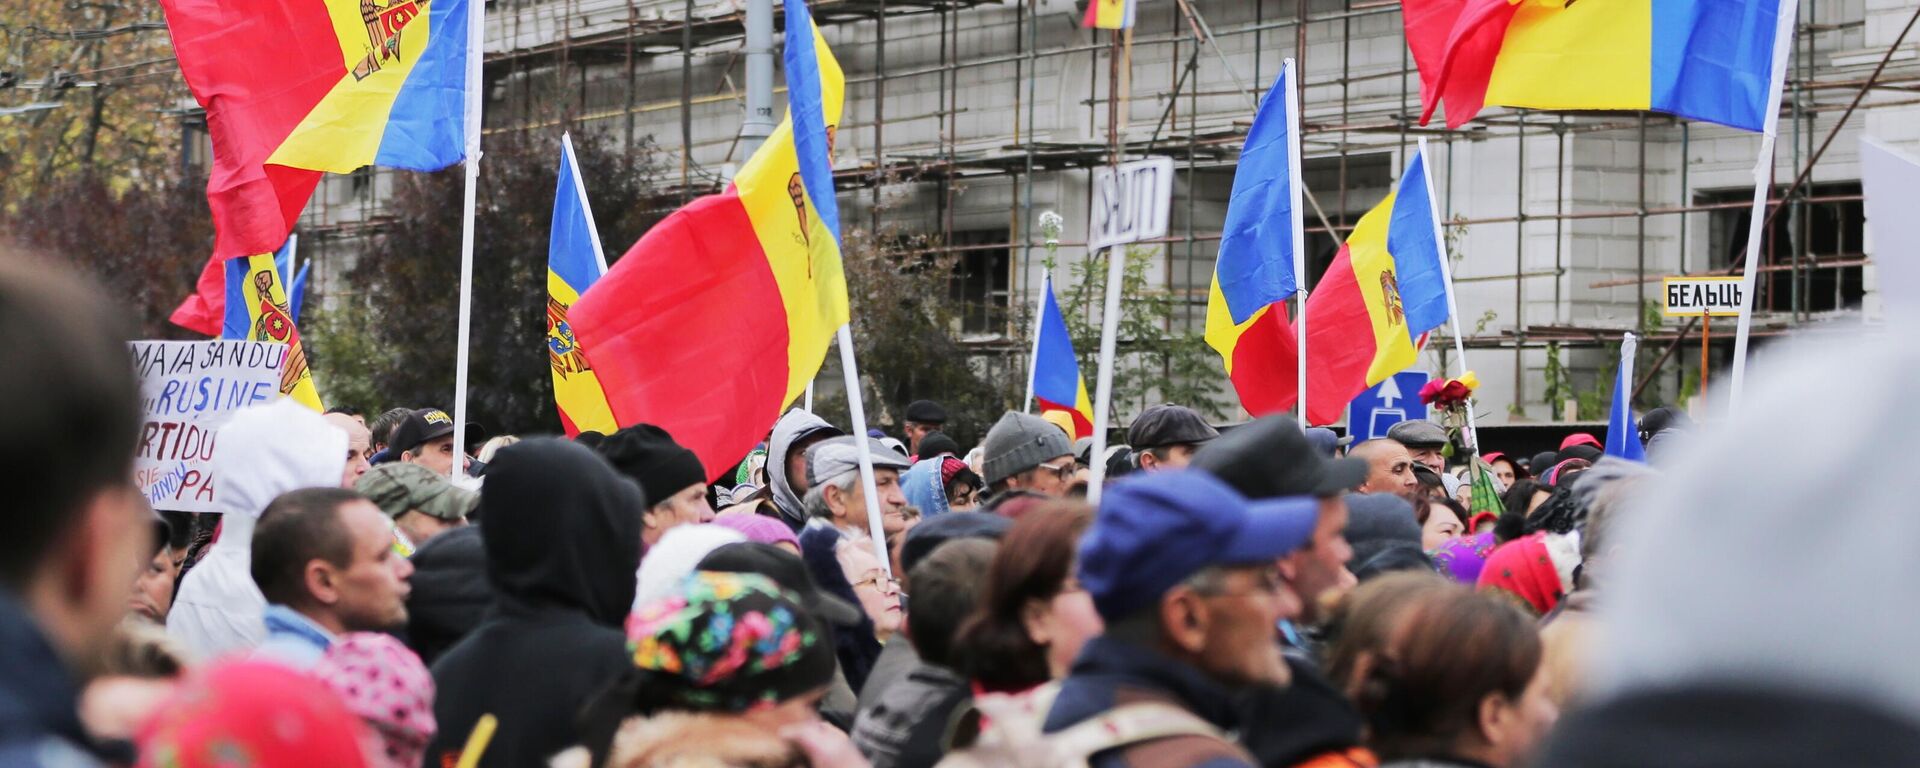 Protestas en Chisináu, Moldavia - Sputnik Mundo, 1920, 13.11.2022